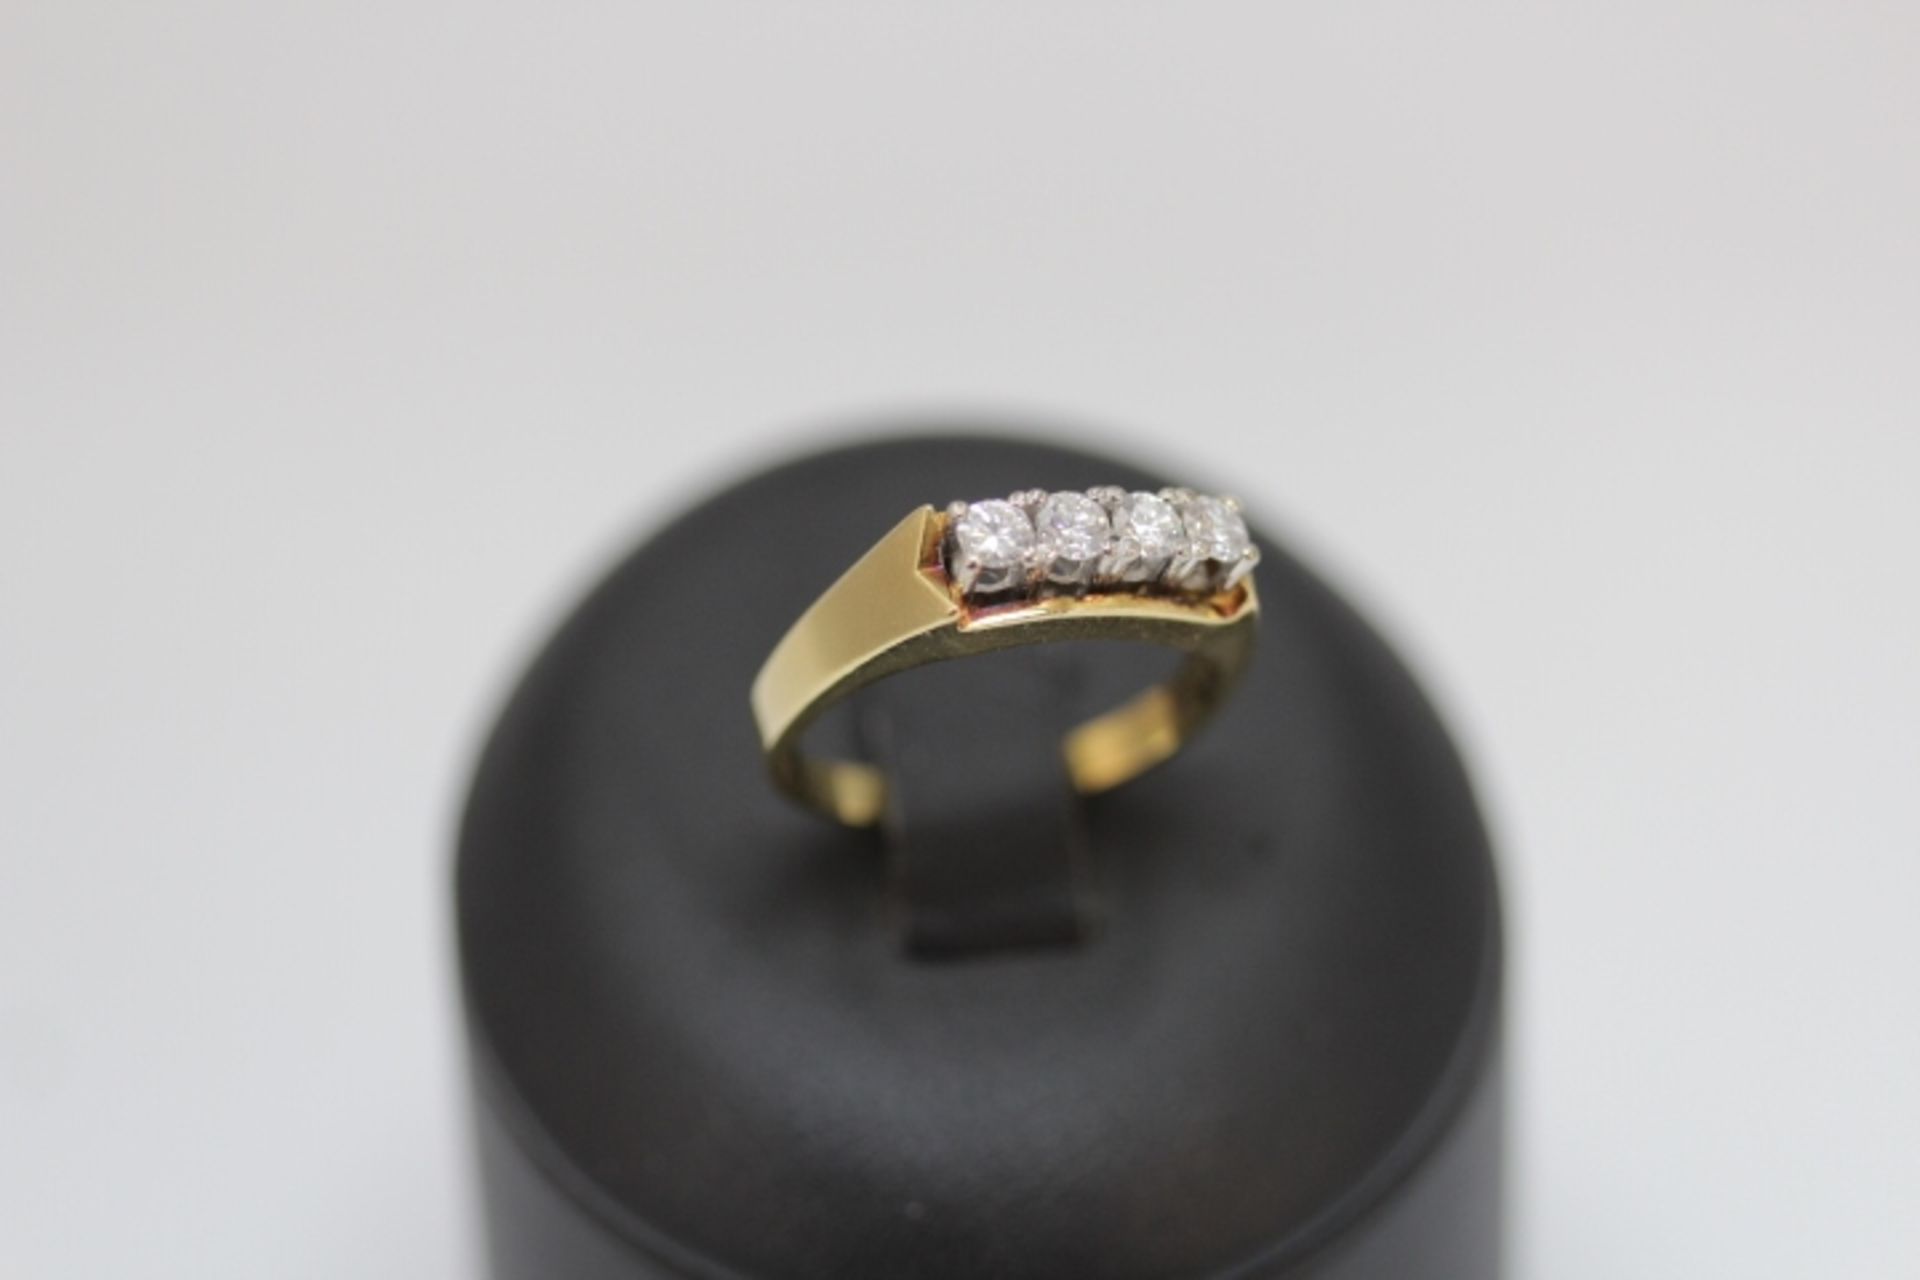 750/18kt.GG.Ring besetzt mit 4 Brillanten F/VVS-IF ca 0,55ct RW:58 Gewicht:6,52gr.